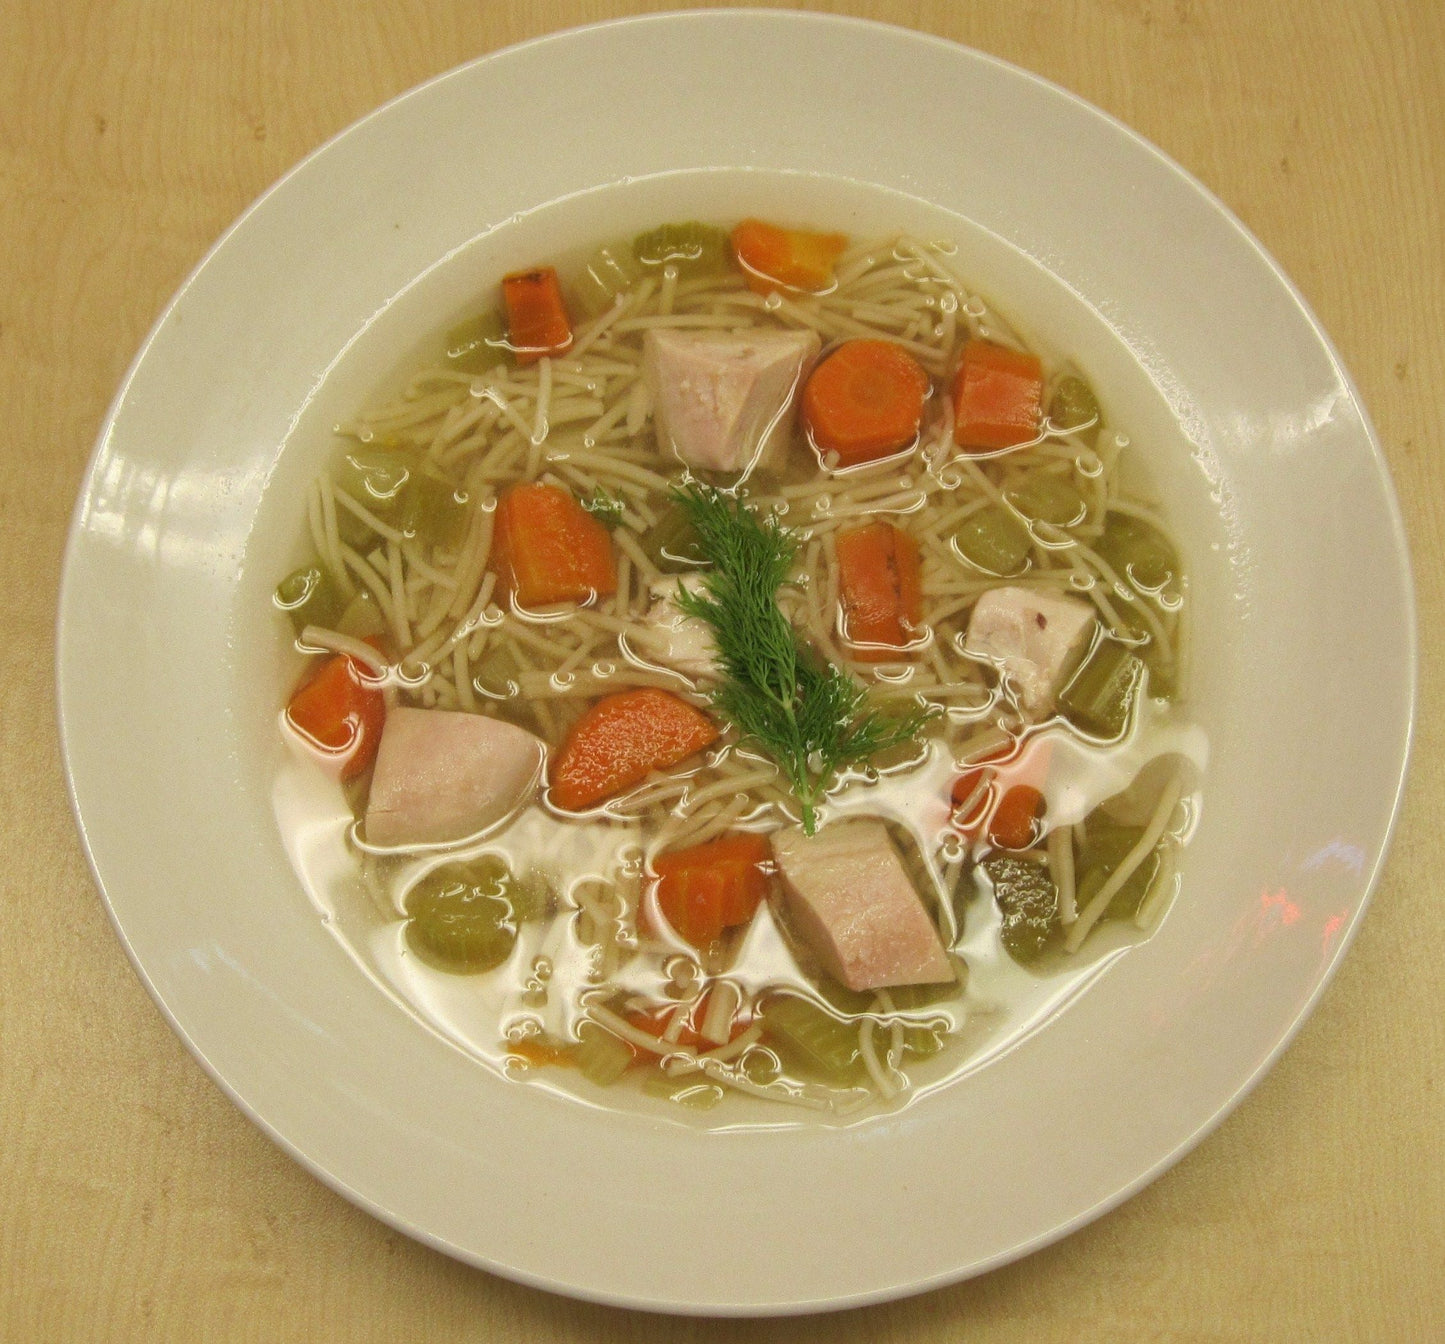 Katz's Delicatessen Chicken Noodle Soup